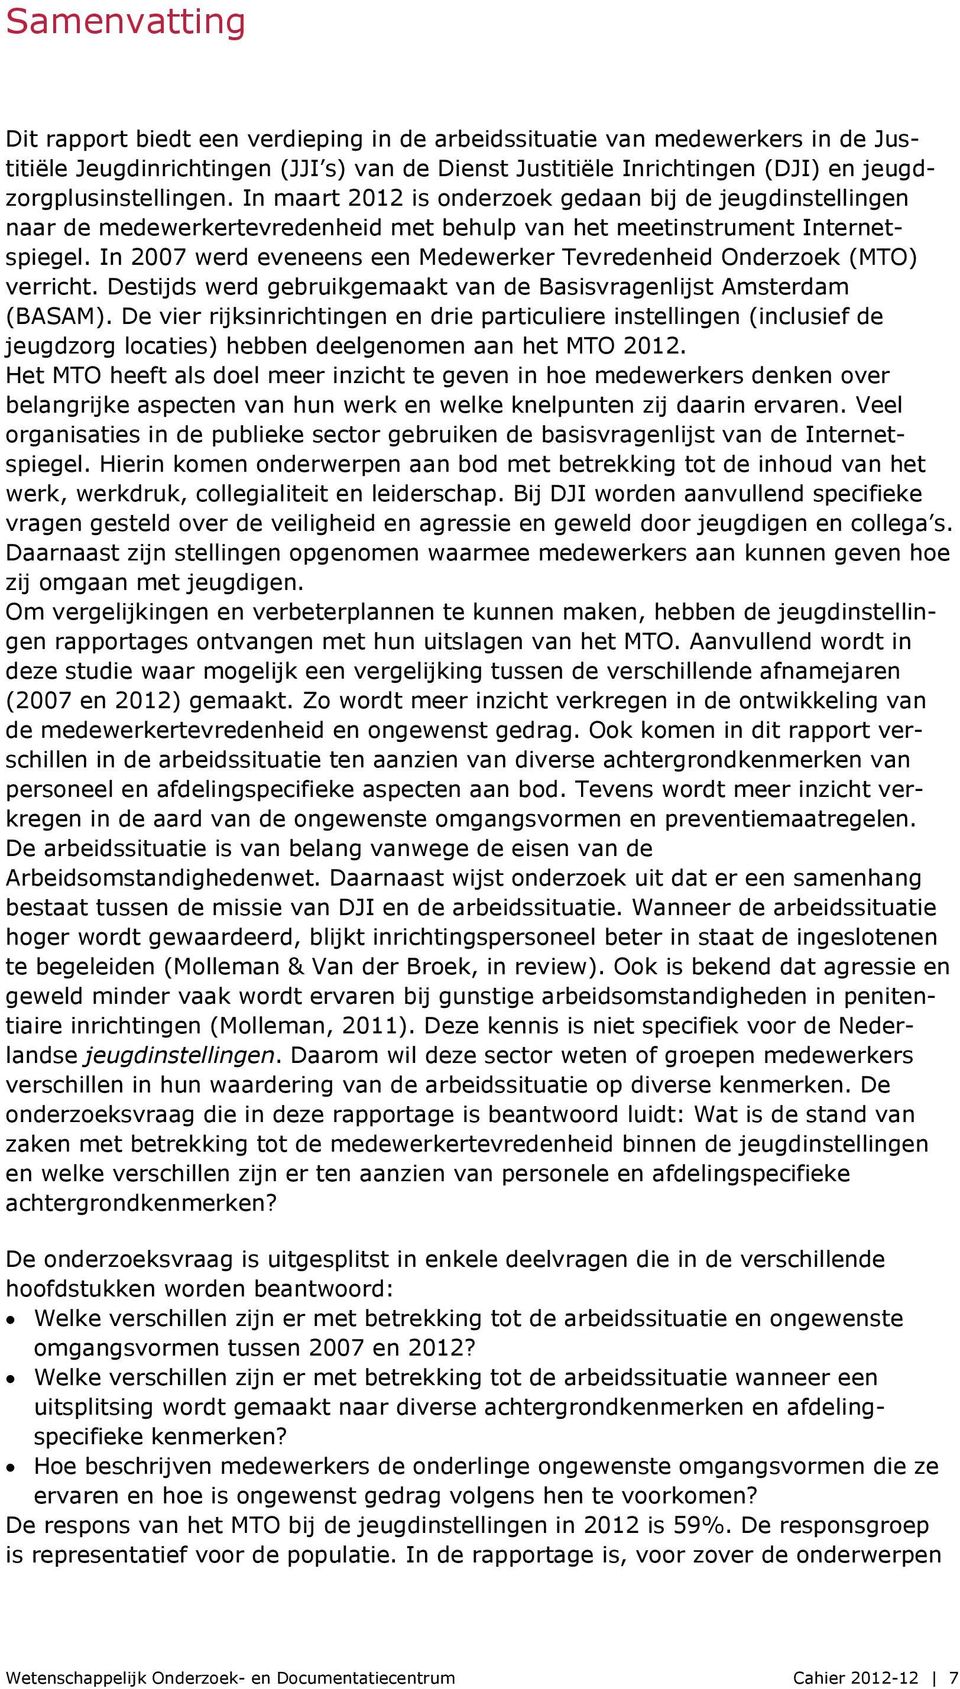 In 2007 werd eveneens een Medewerker Tevredenheid Onderzoek (MTO) verricht. Destijds werd gebruikgemaakt van de Basisvragenlijst Amsterdam (BASAM).